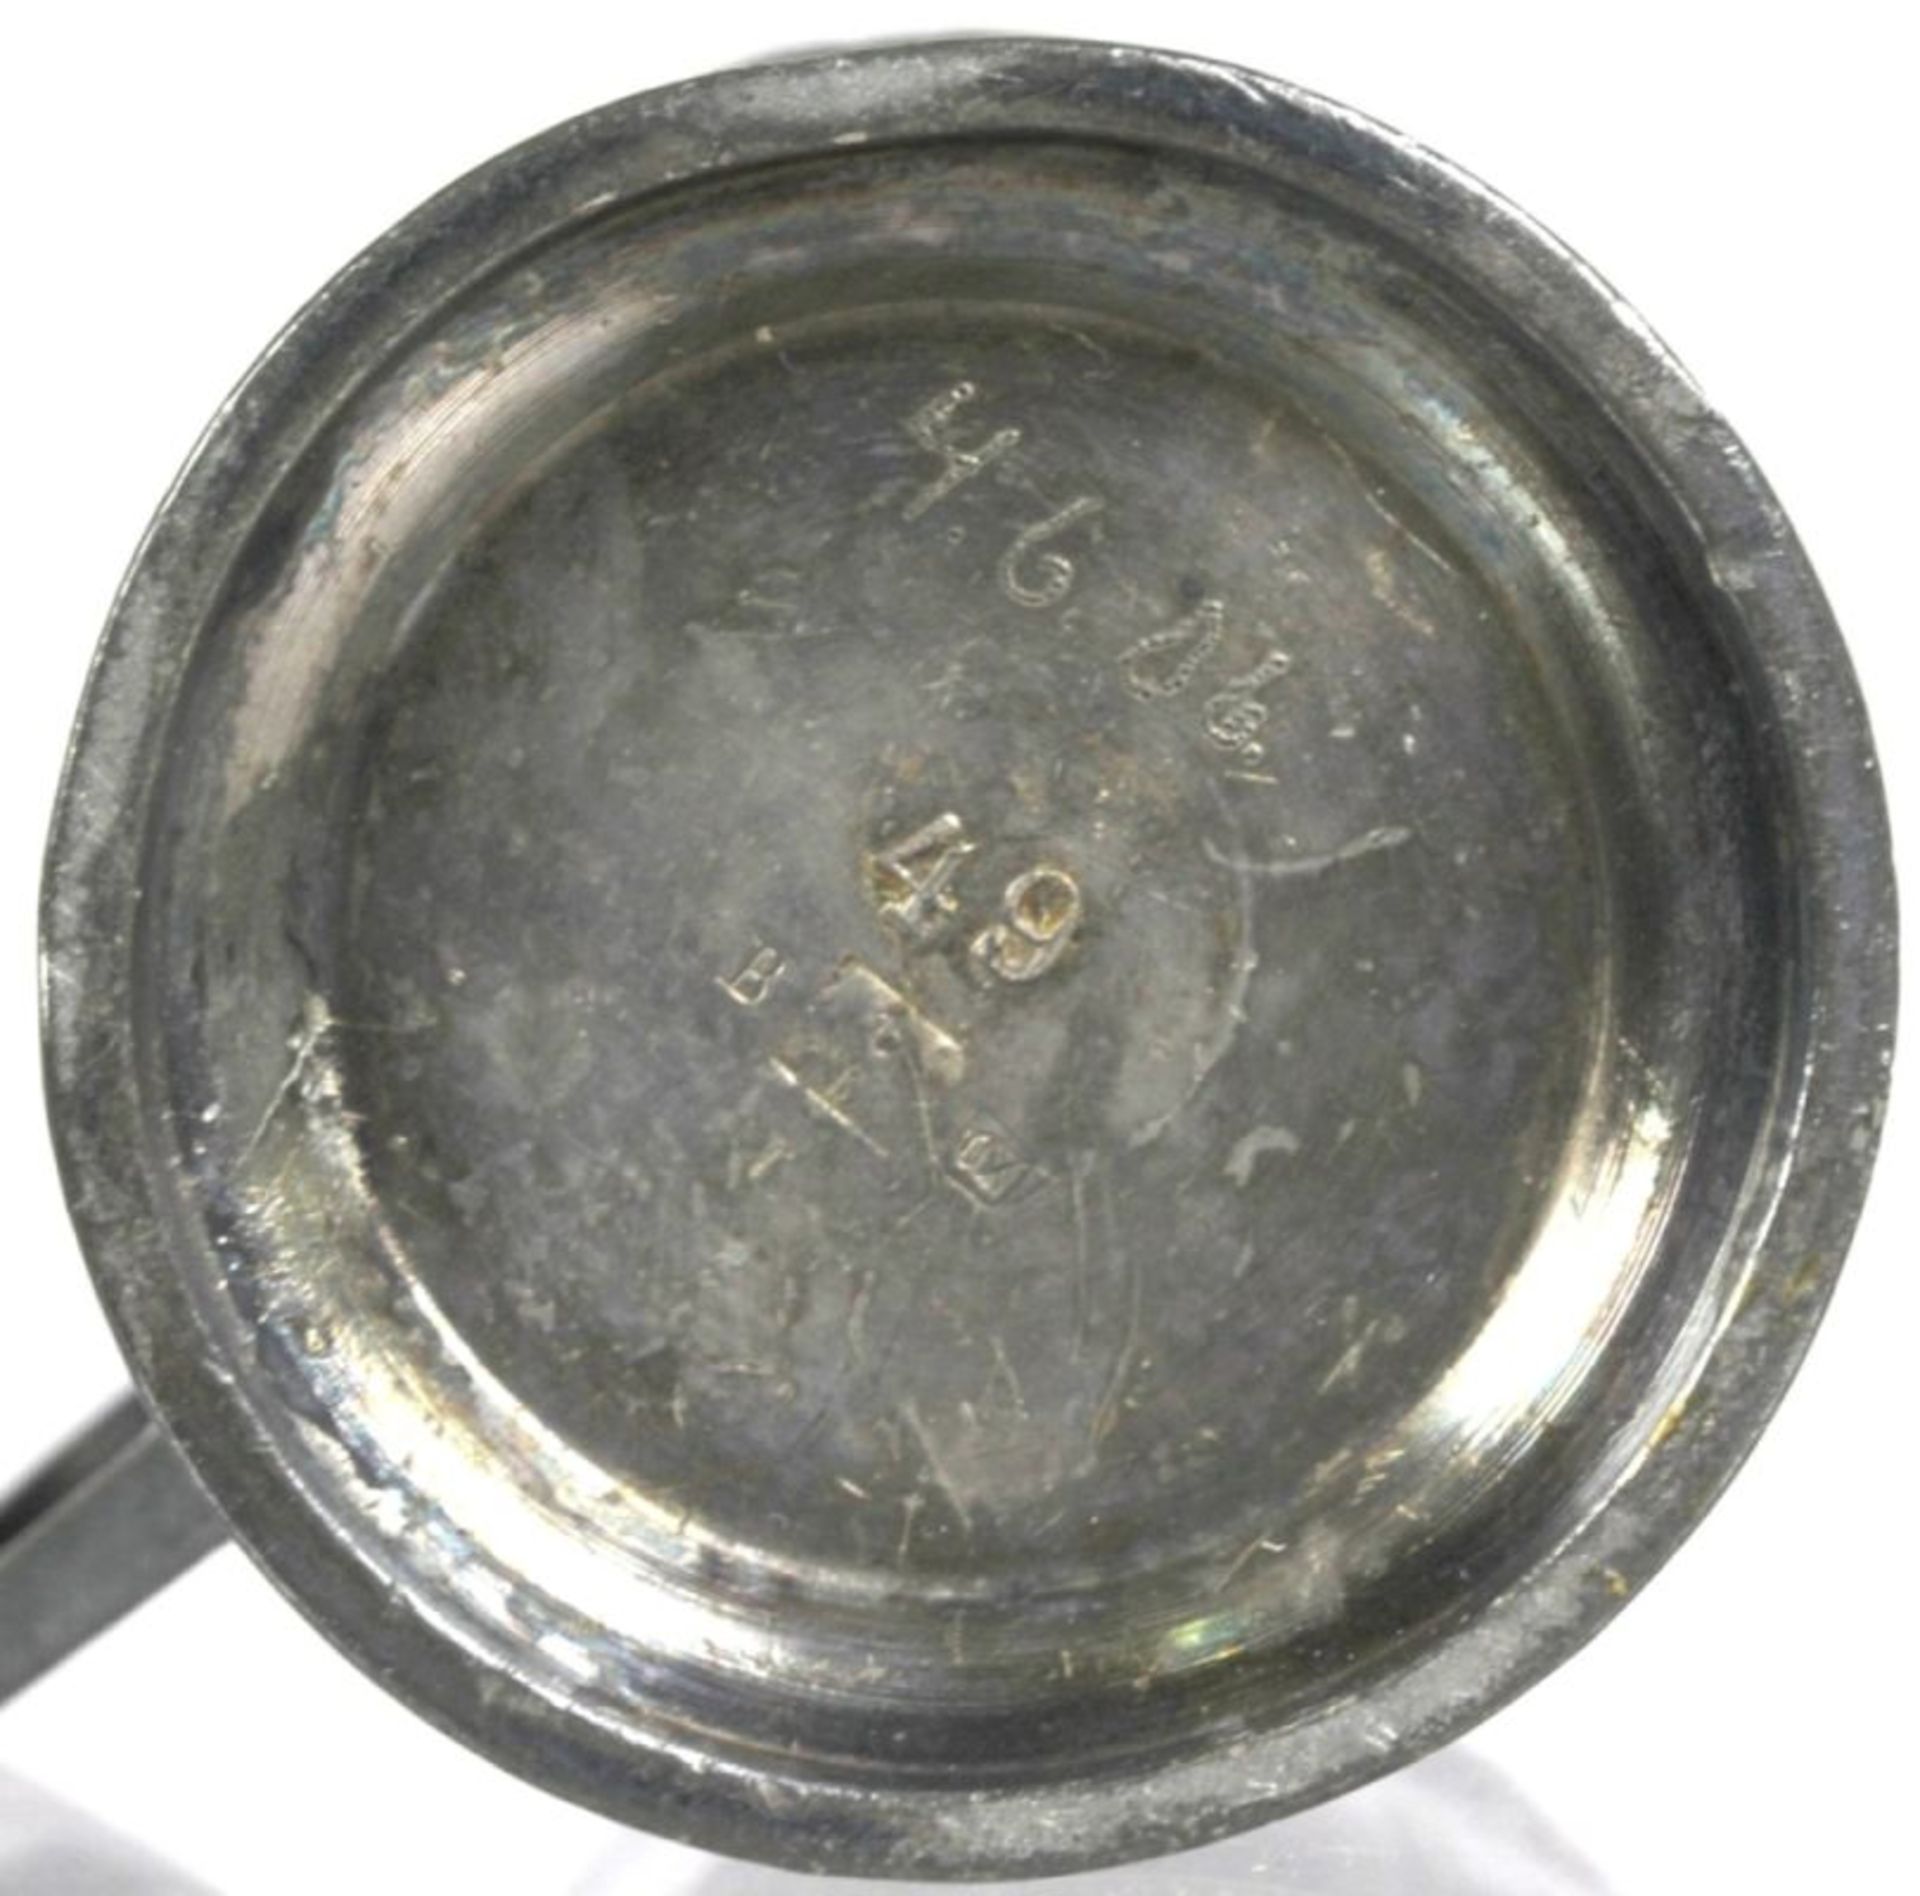 Britanniametall-Tasse, WMF, Geislingen, um 1906, Mod.nr. 49, auf flach ausgestelltemRundfuß - Bild 3 aus 3